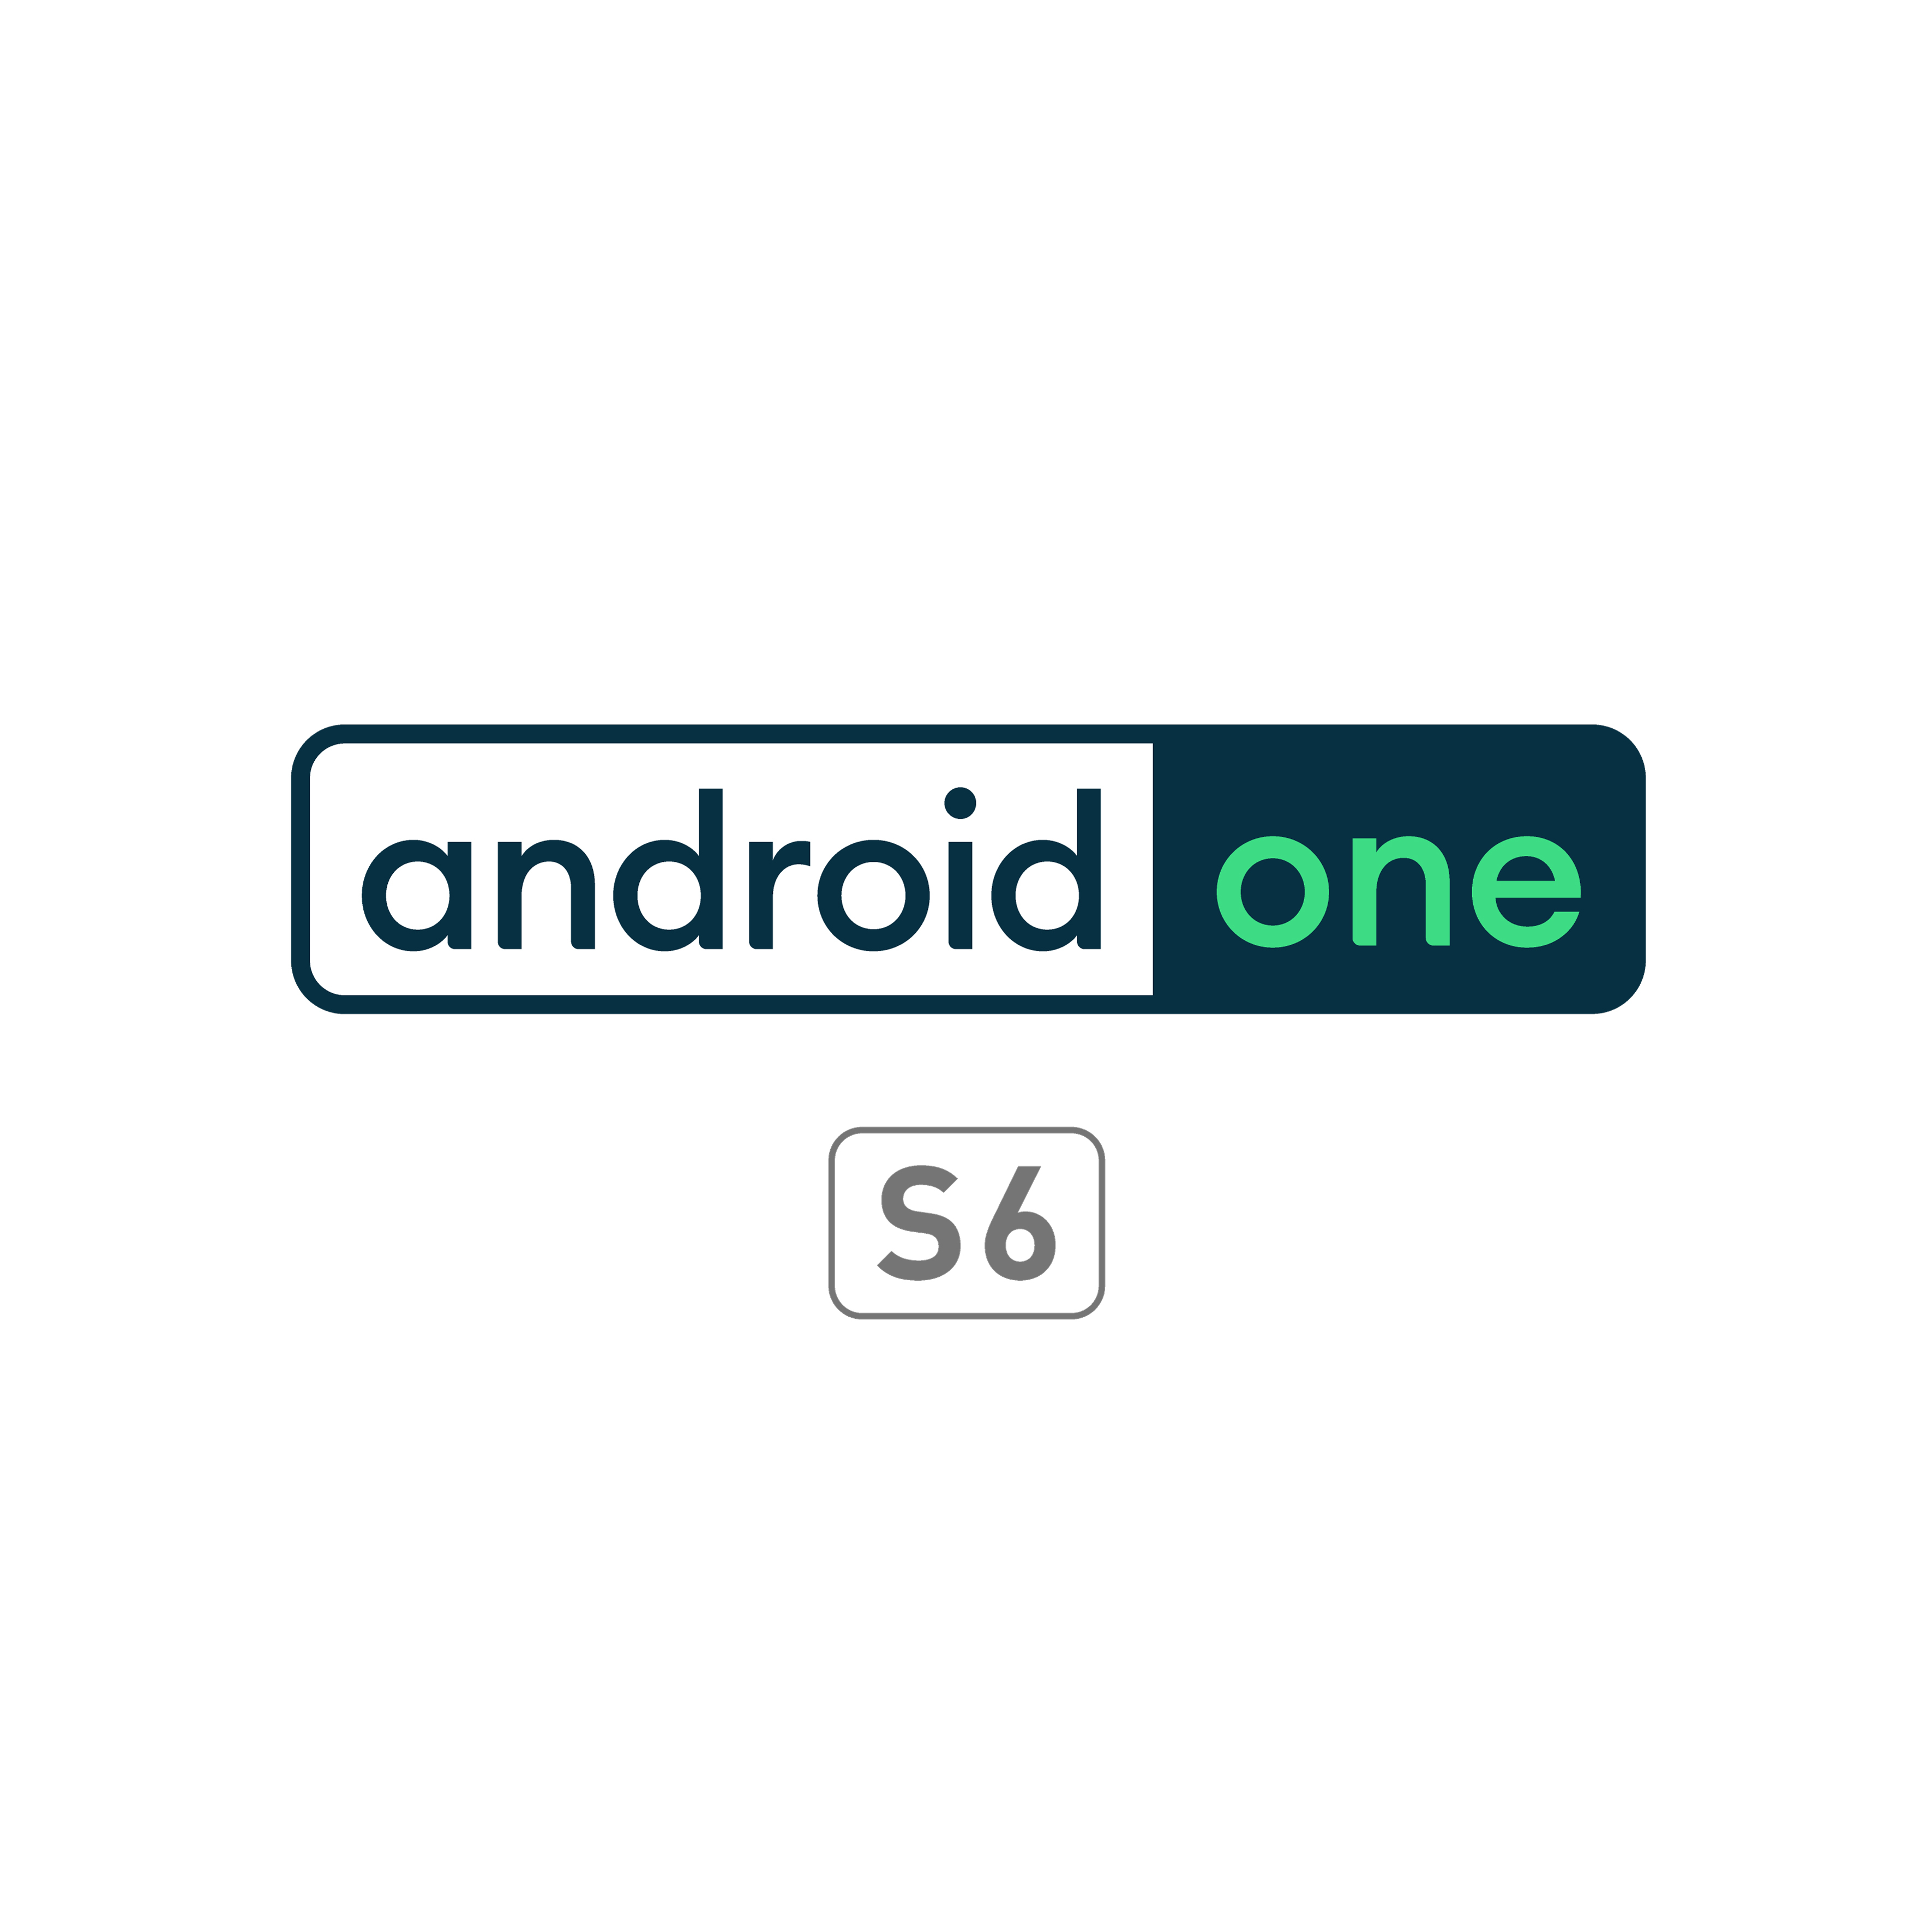 最新のandroidとセキュリティでgoogleサービスを楽しめるandroid Oneスマートフォン S6 登場 インディー